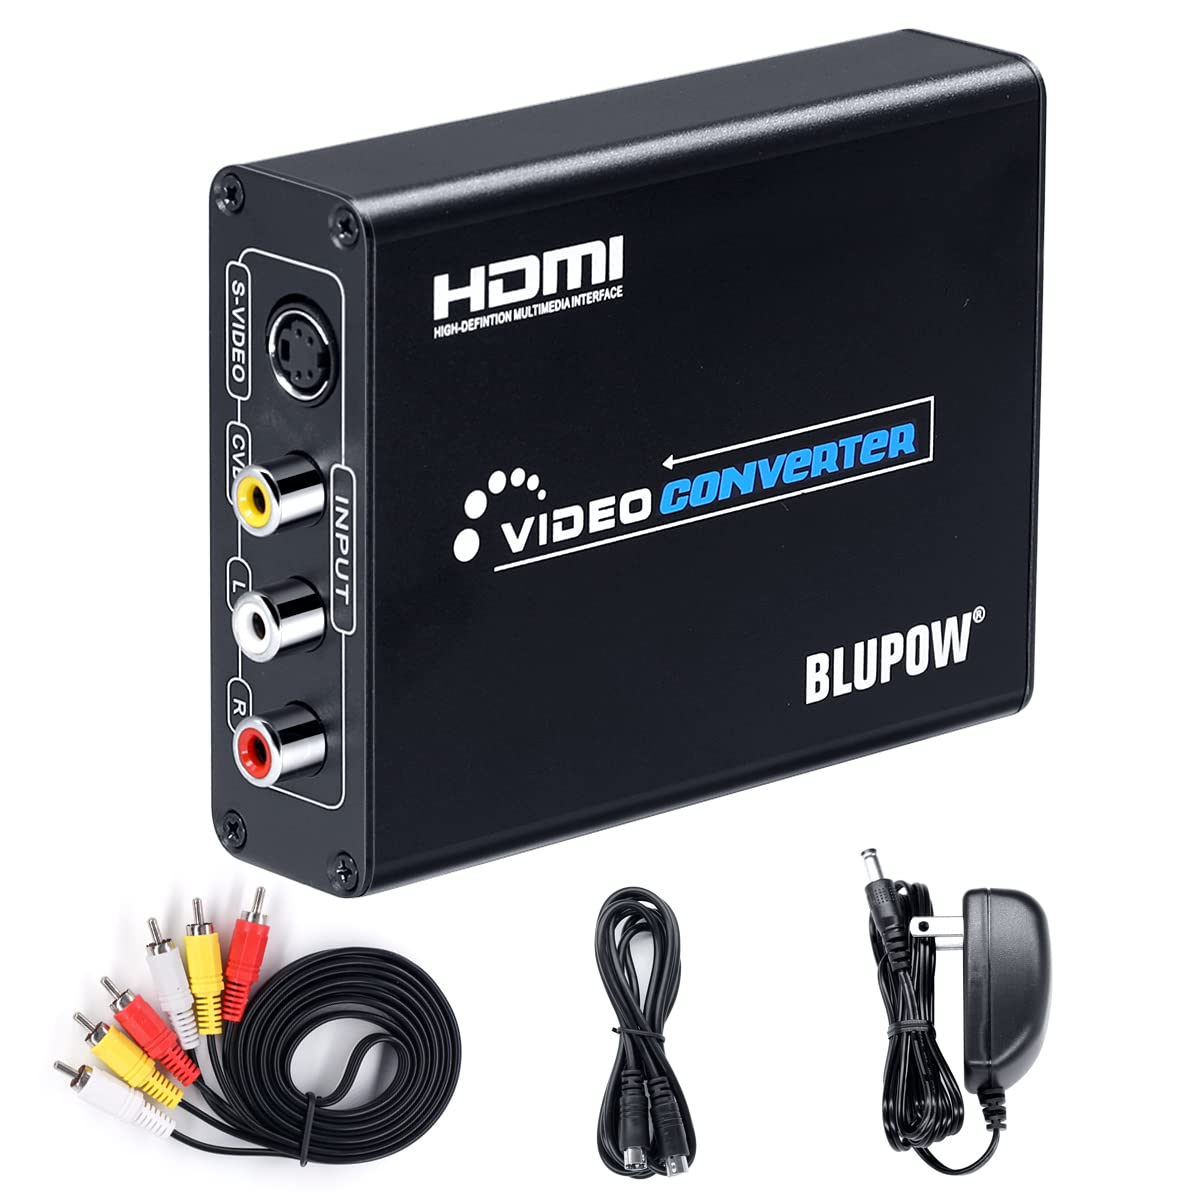 コンポジット/S端子 to HDMI 変換器 108